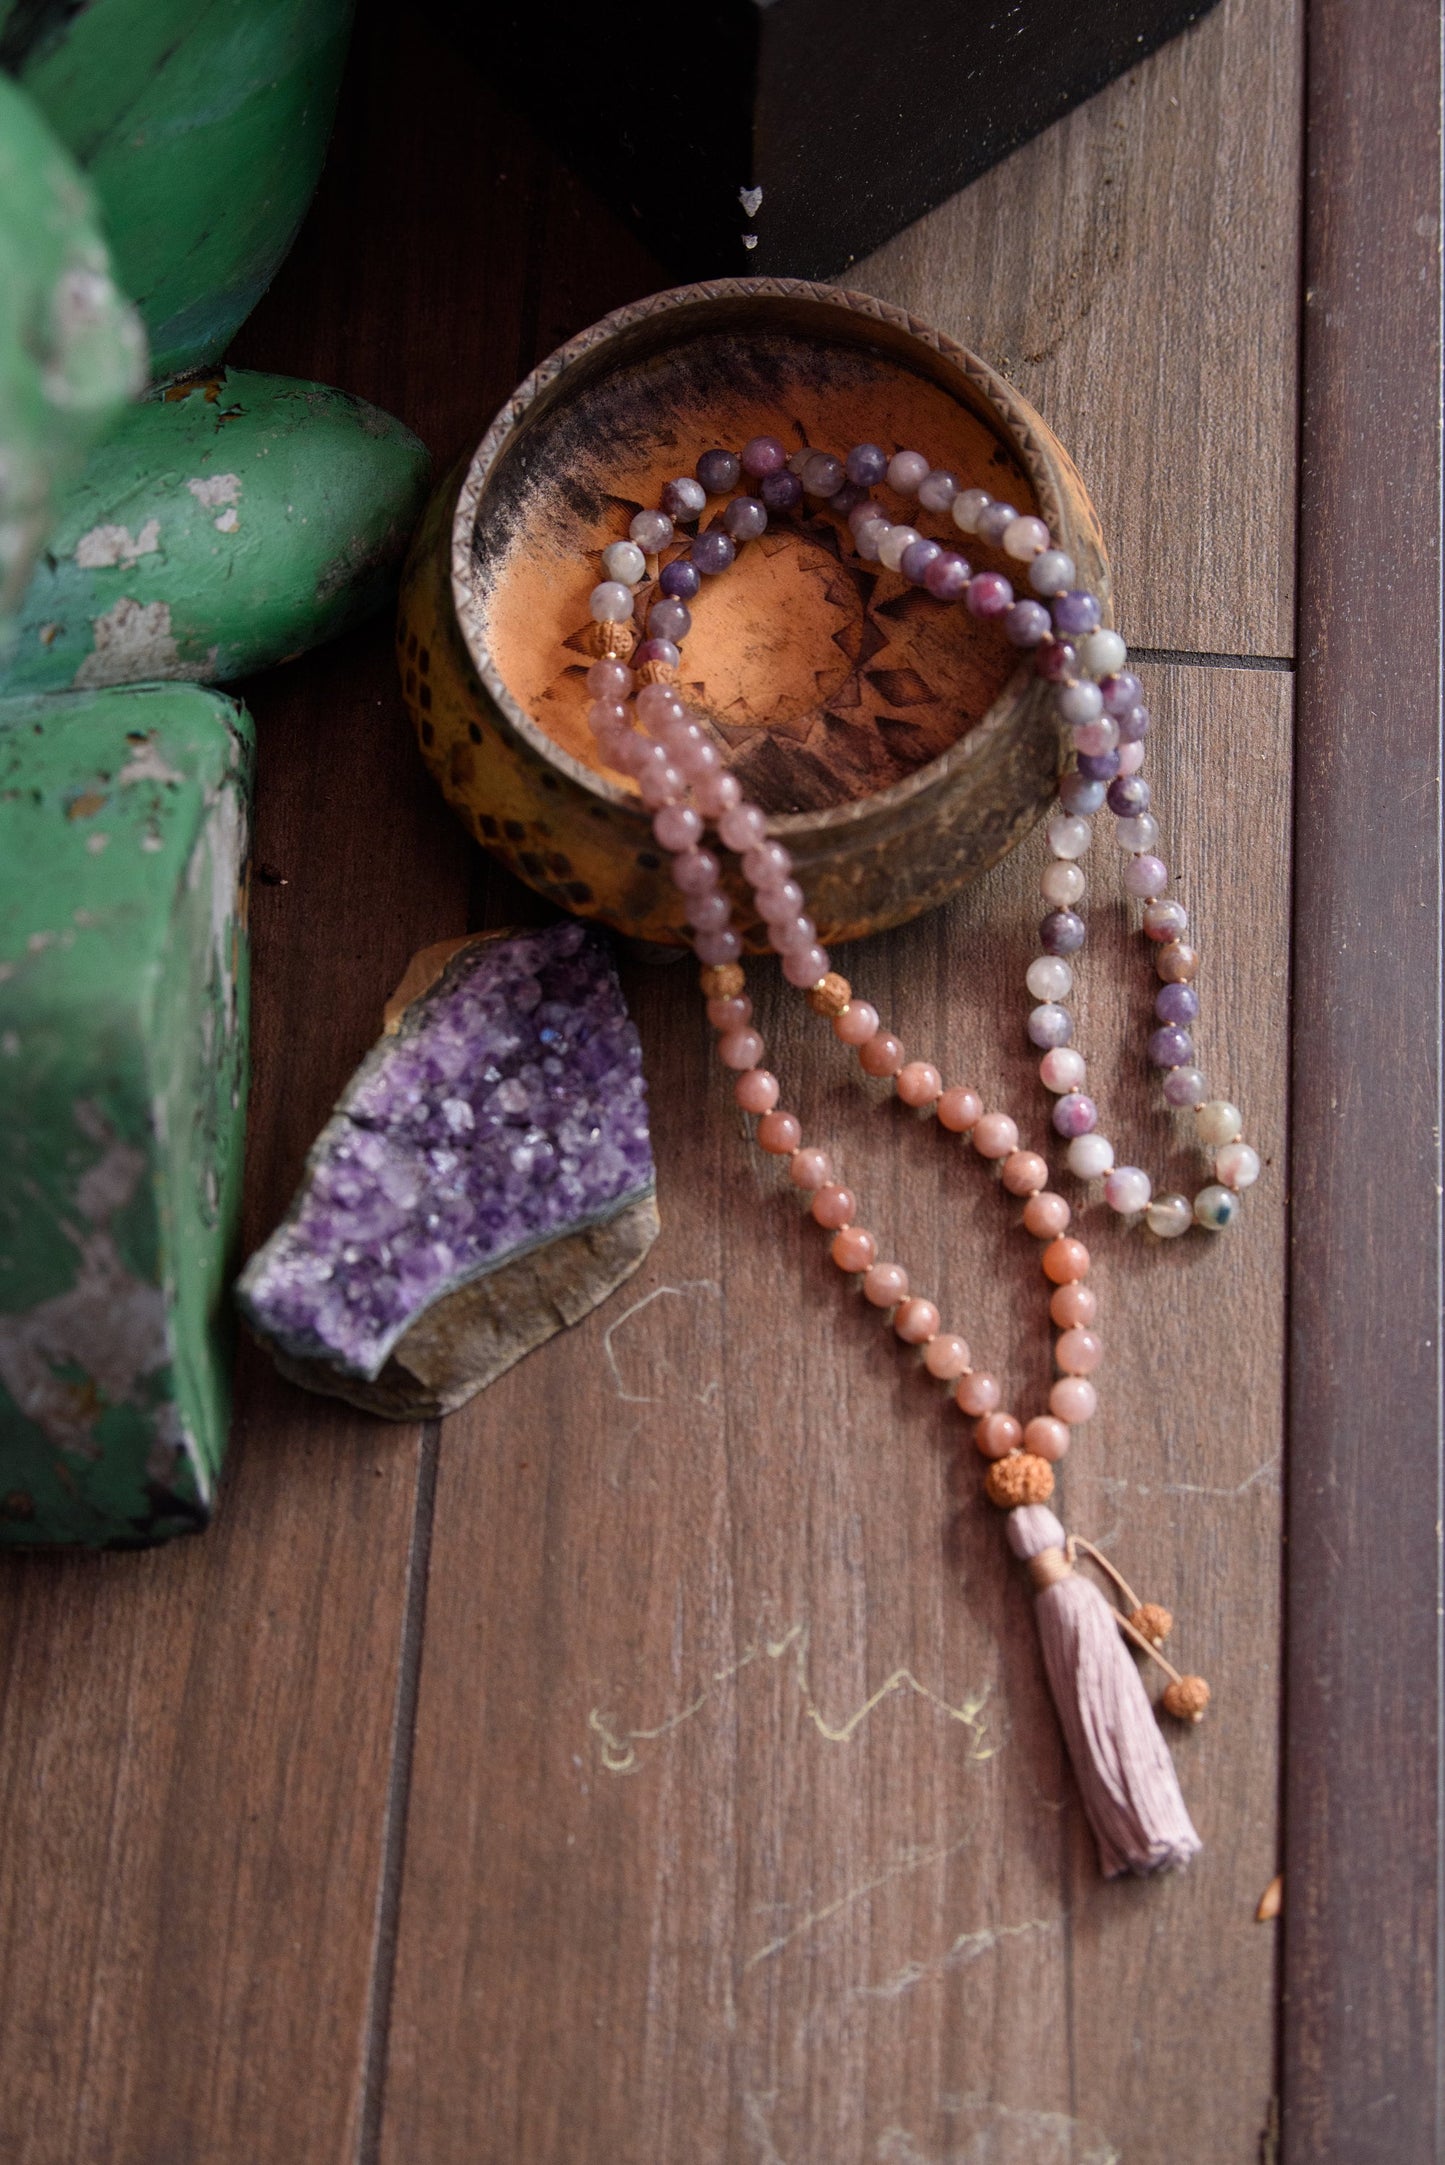 Mala Necklace 108, Meditation Beads, Heart Chakra Healing Love Energy, Buddhist Prayer Beads, Japa Mala